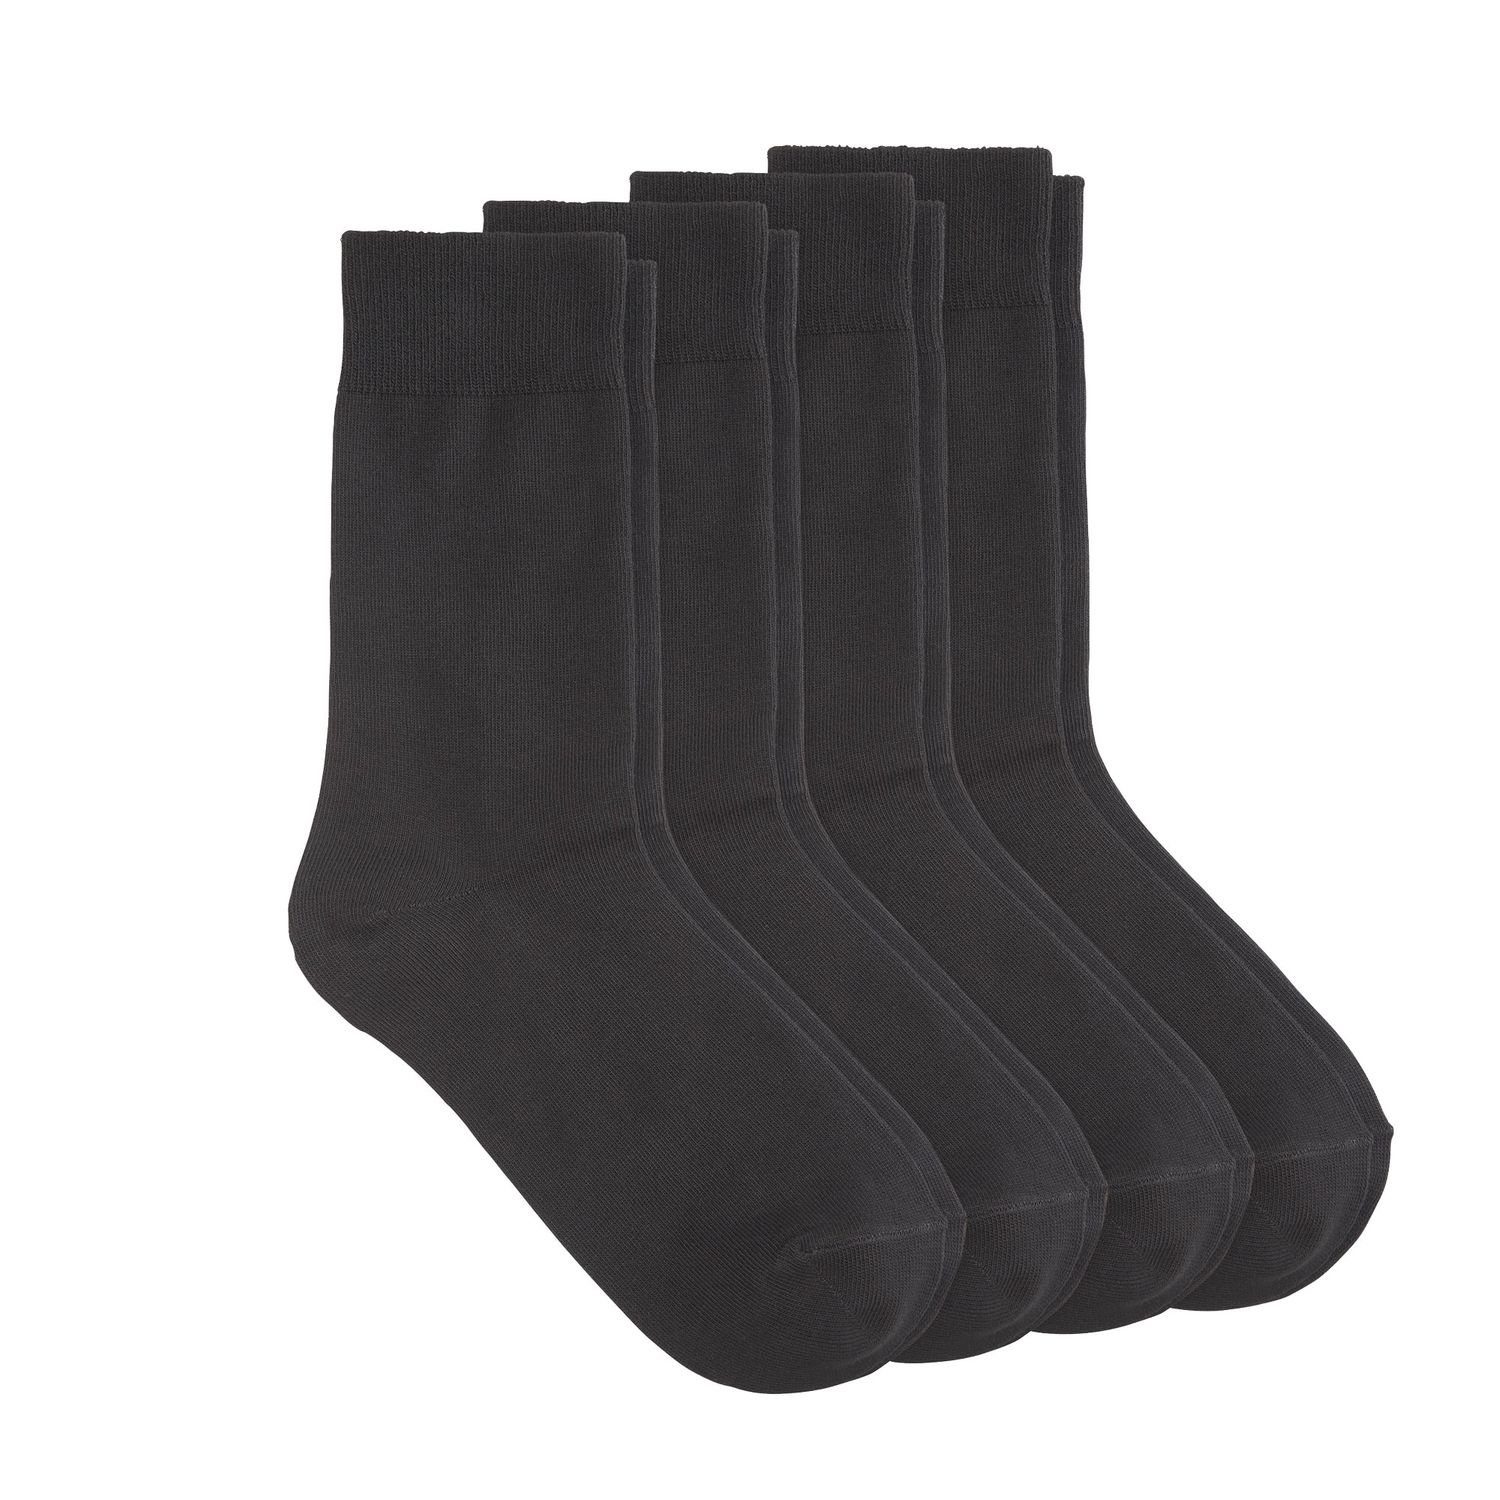 MUSTANG Socken Unisex Basic Socks (24-Paar) mit geripptem rutschfesten Komfortbund, 24 Paar schwarz